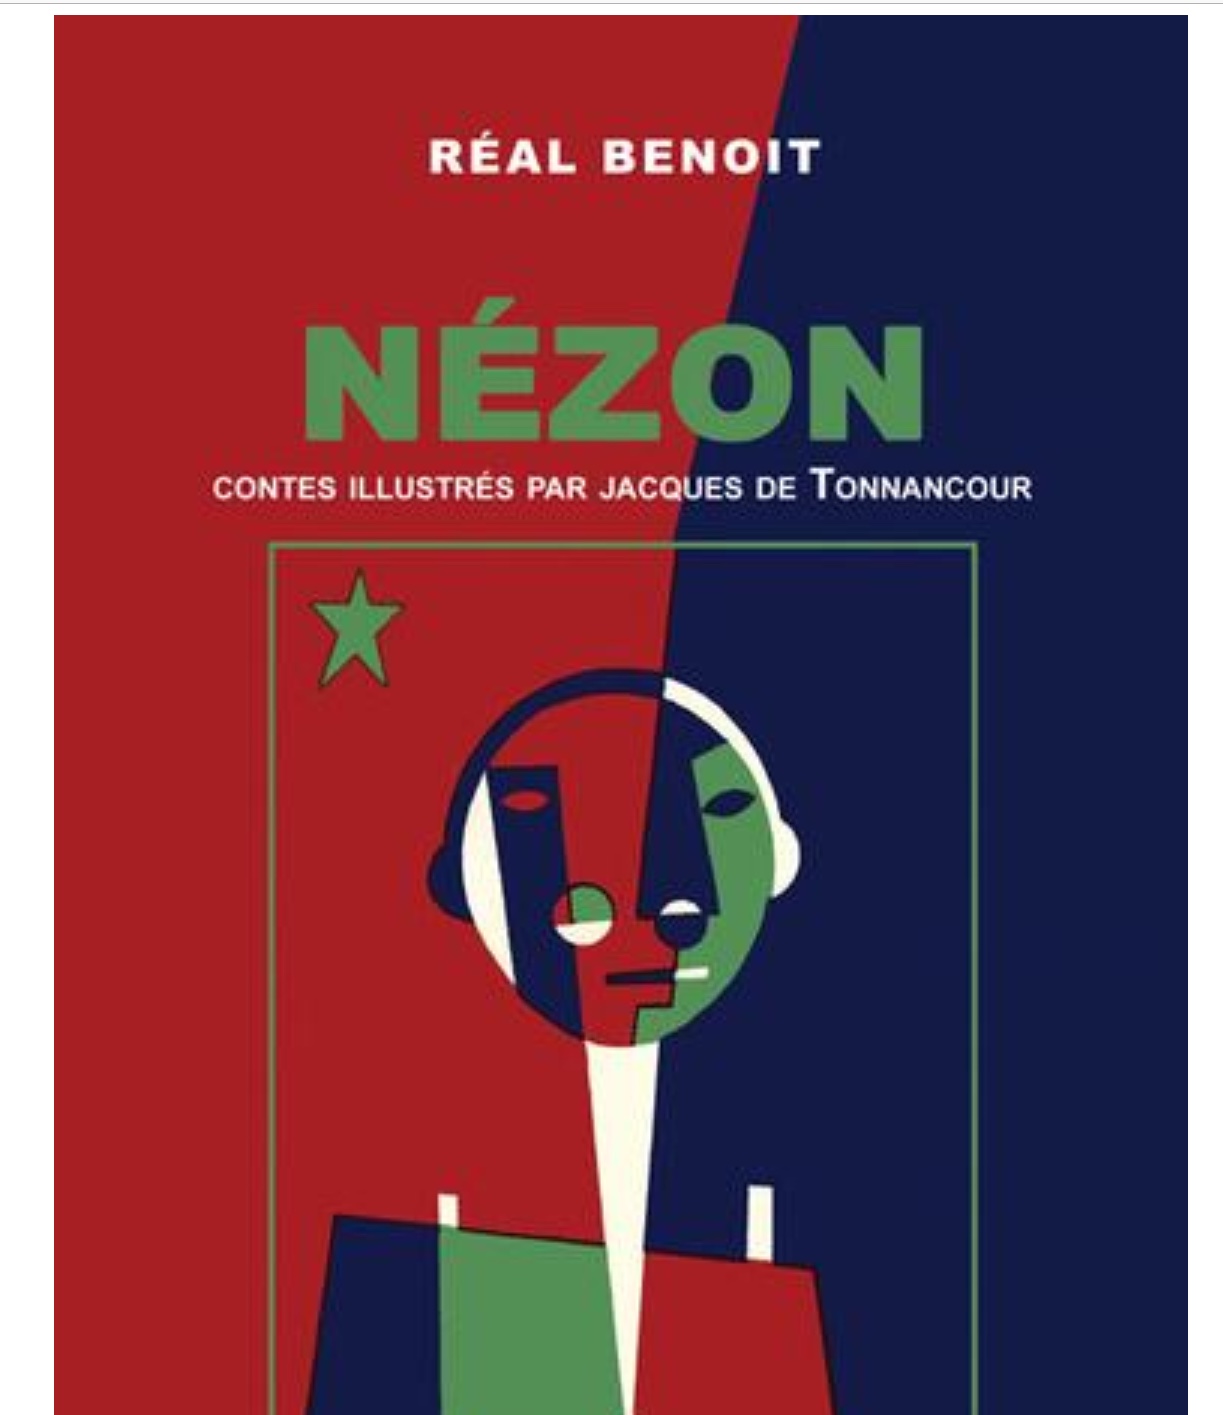 La couverture du livre sur le thème du néon de Réal Benoit.